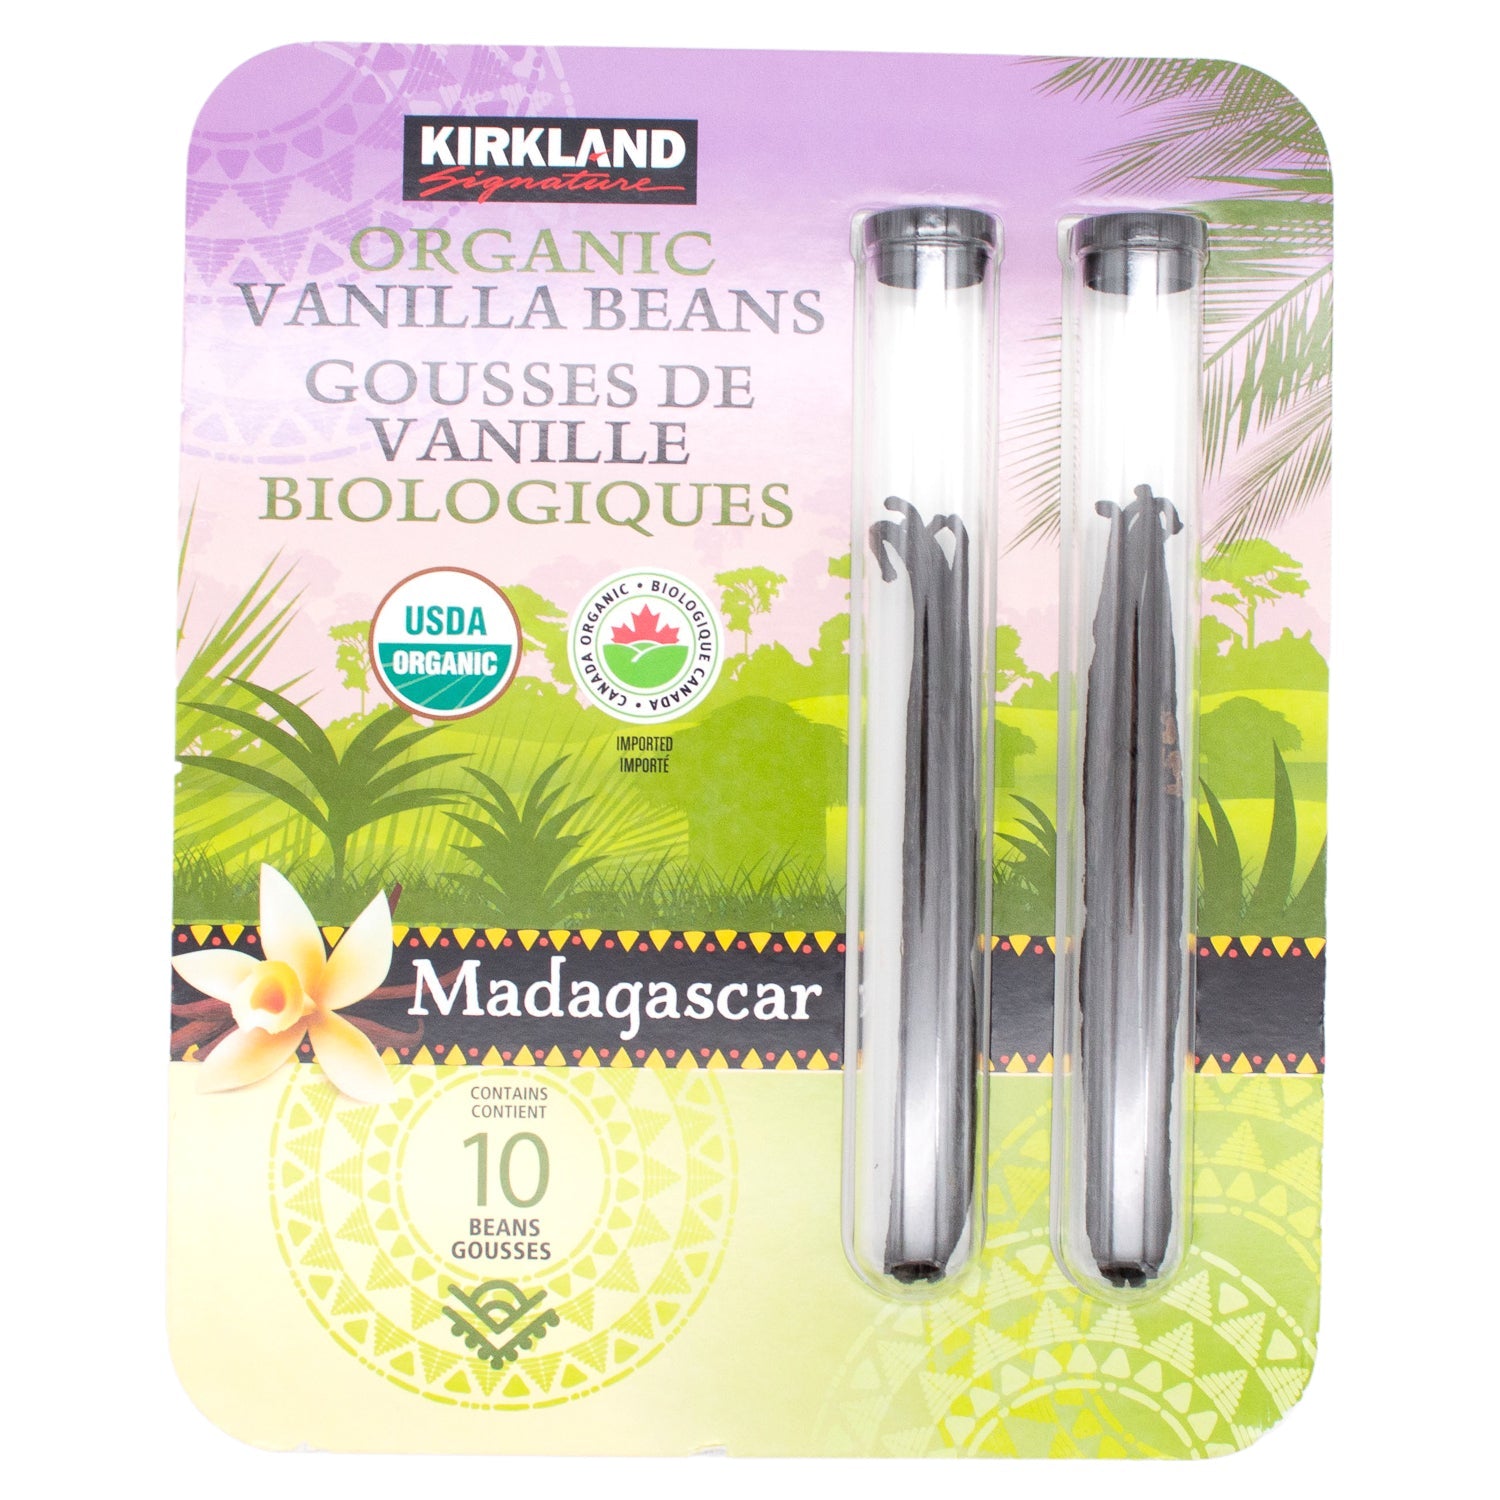 Kirkland Signature Madagascar Organic Gourmet Vanilla Beans Kirkland Signature Madagascar 10 Beans 